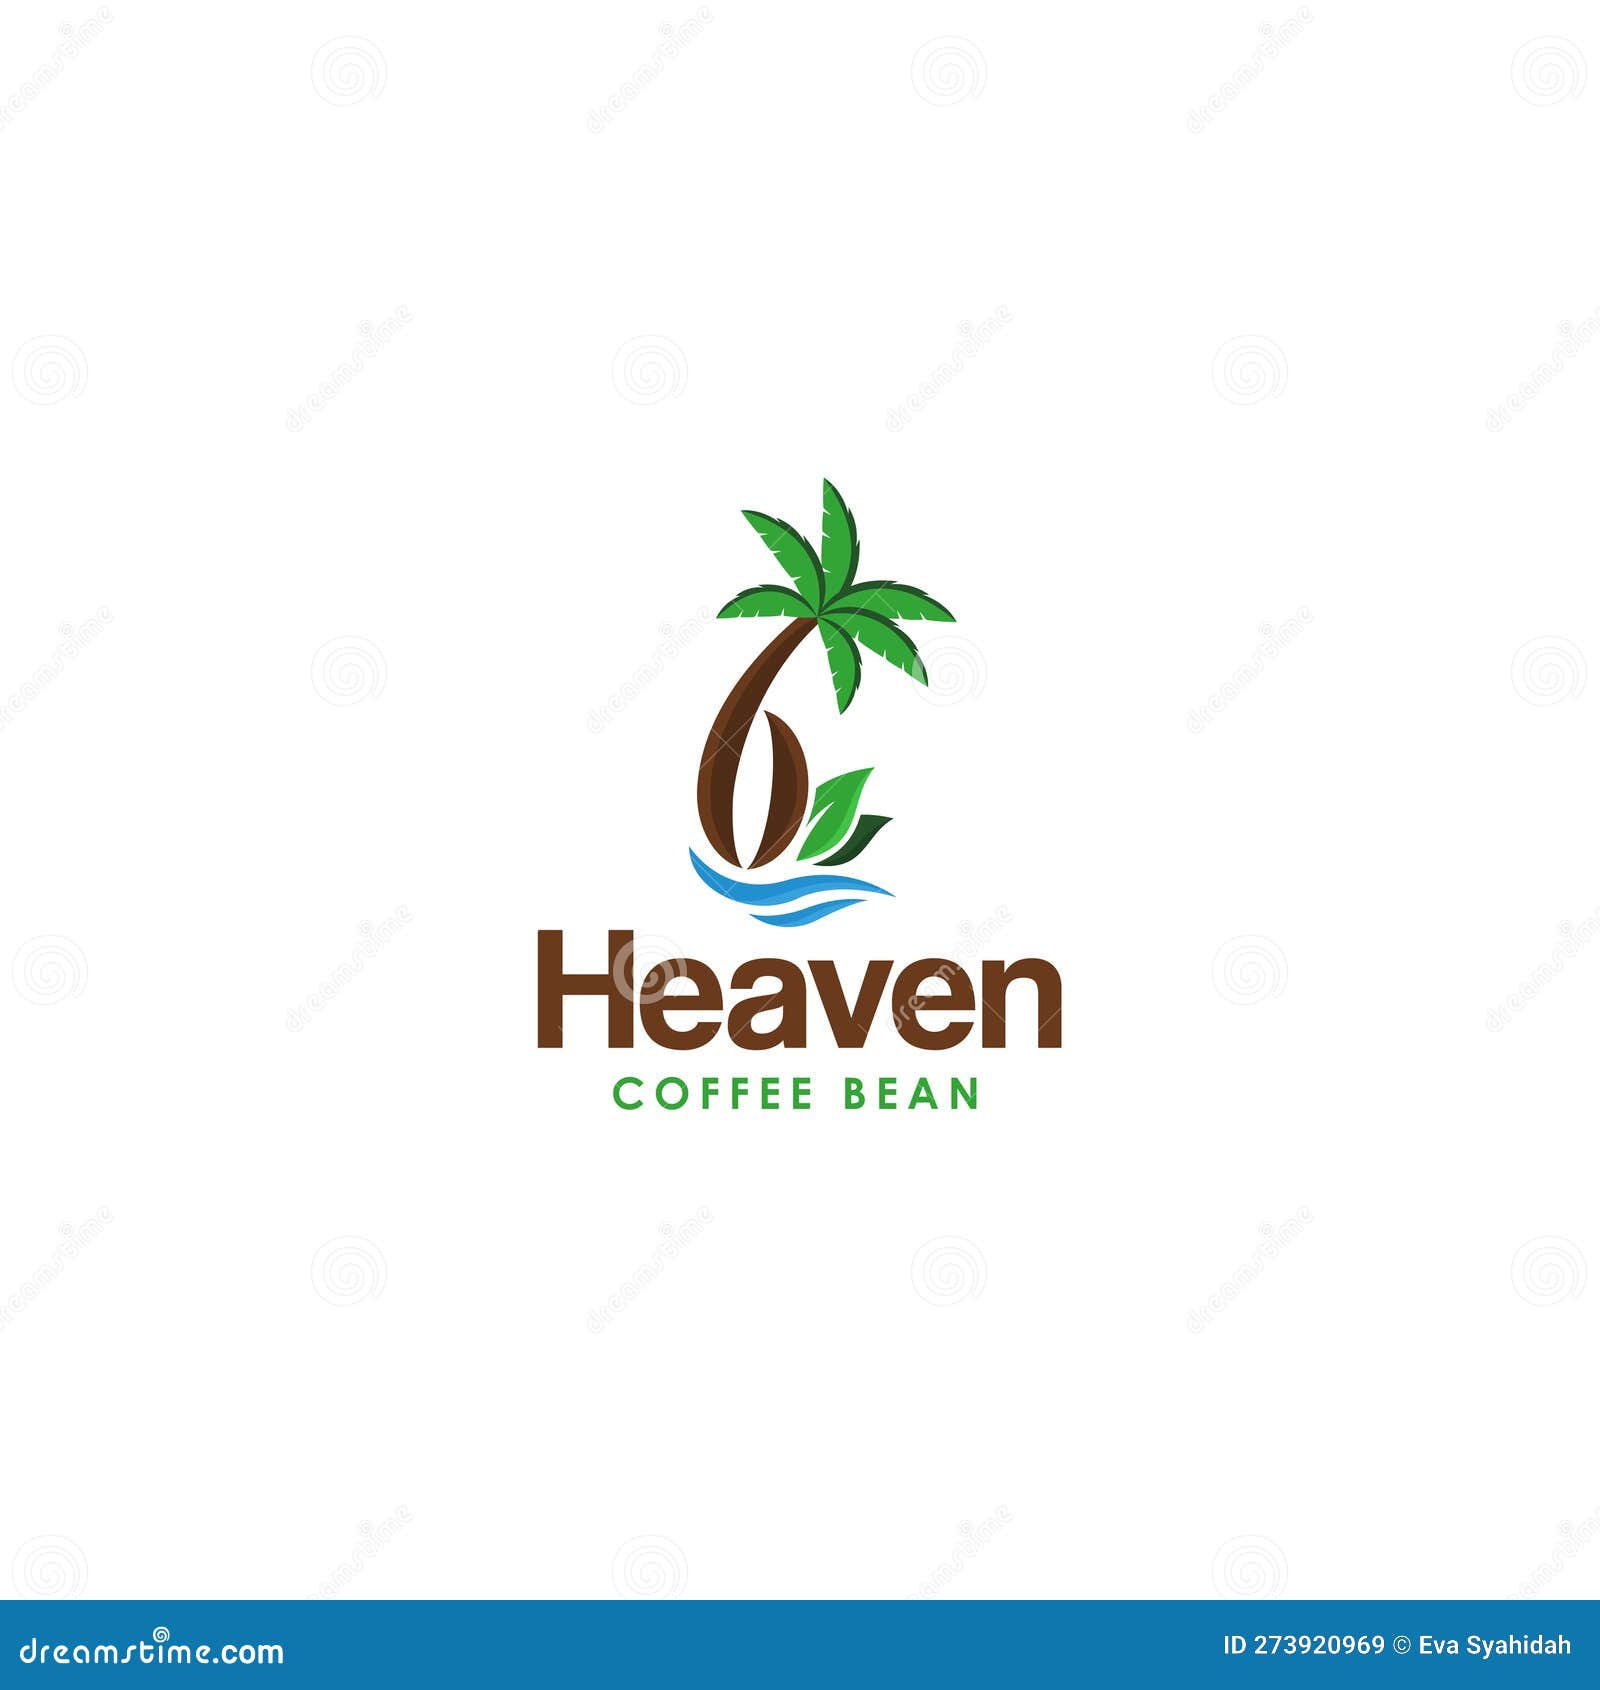 Welcome Lost Heaven Vector Art Stock Vector (Royalty Free) 145452460 |  Shutterstock